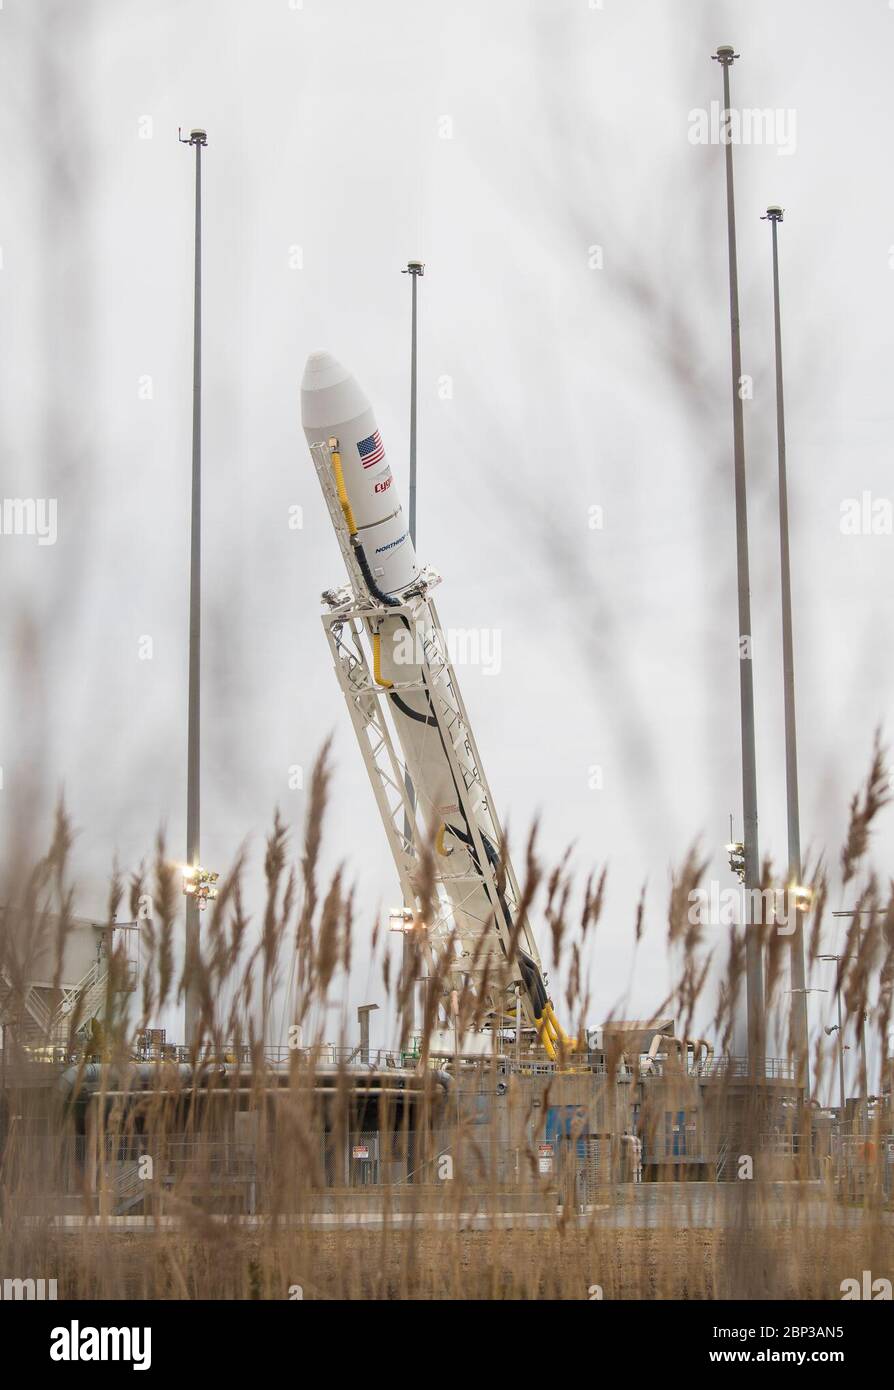 Northrop Grumman Antares CRS-13 bajado a posición horizontal el cohete Northrop Grumman Antares se baja a una posición horizontal para refrescar y recargar la carga final en la nave espacial Cygnus, miércoles, 12 de febrero de 2020, en el lanzamiento Pad-0A de la instalación de vuelo Wallops de la NASA en Virginia. La 13ª misión de reabastecimiento de carga contratada de Northrop Grumman con la NASA a la Estación Espacial Internacional entregará más de 7,500 libras de ciencia e investigación, suministros para la tripulación y equipo para vehículos al laboratorio orbital y a su tripulación. Foto de stock